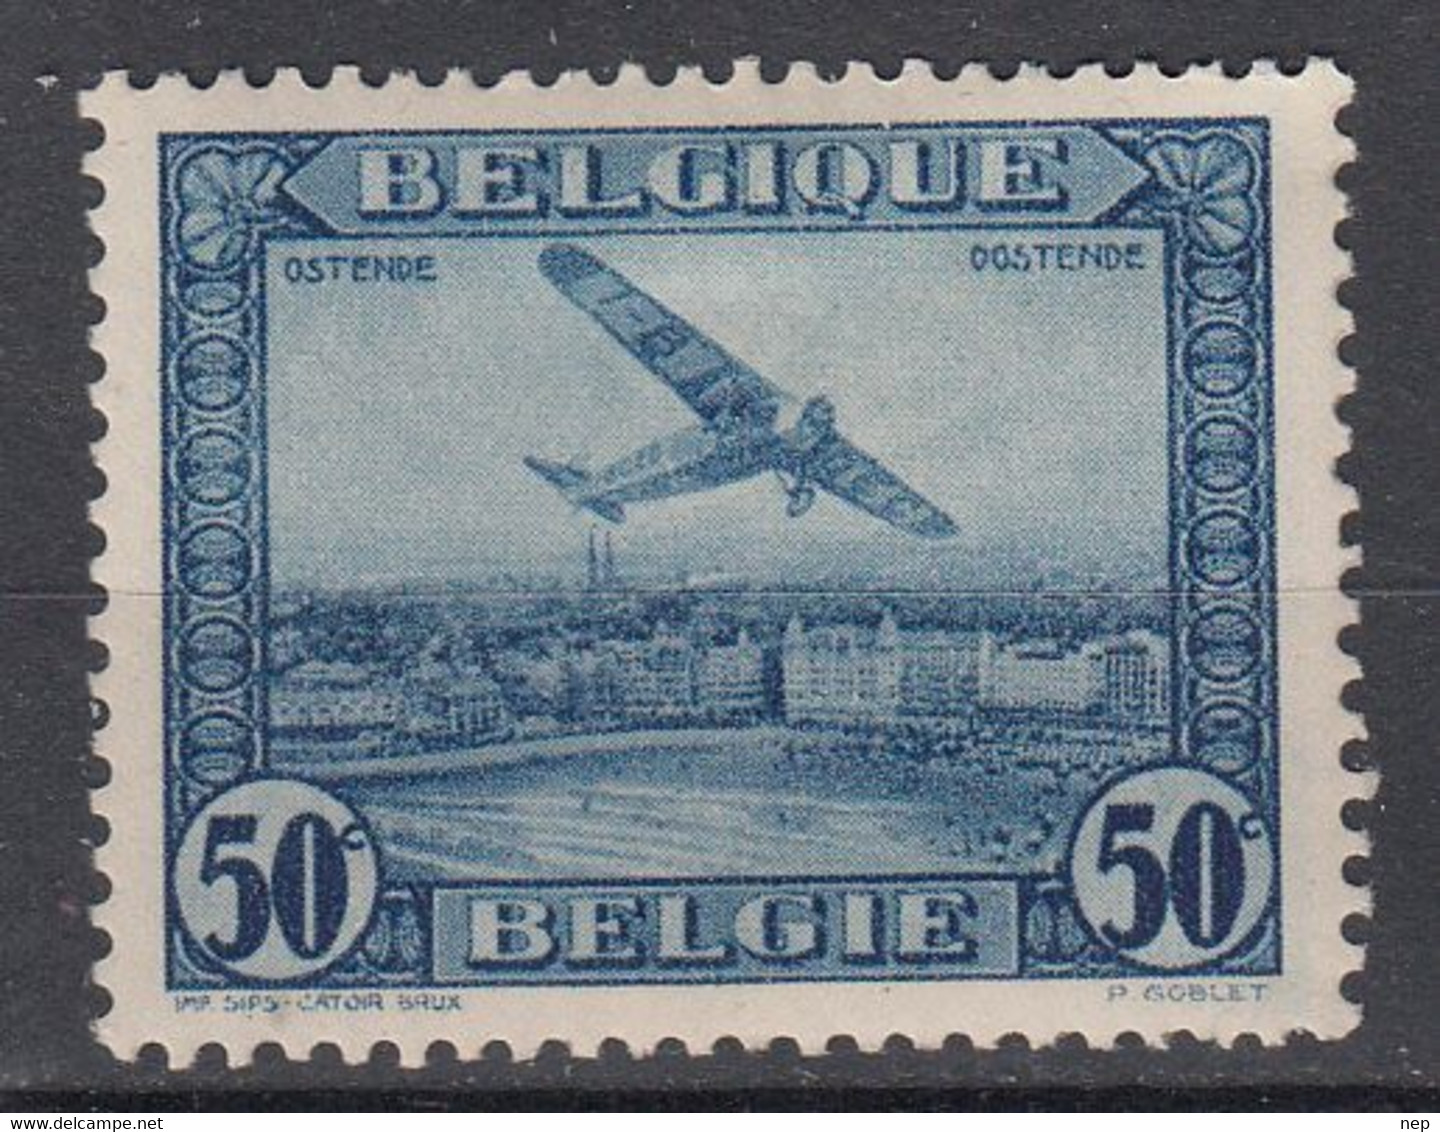 BELGIË - OPB - 1930 - PA 1 - MH* - Mint